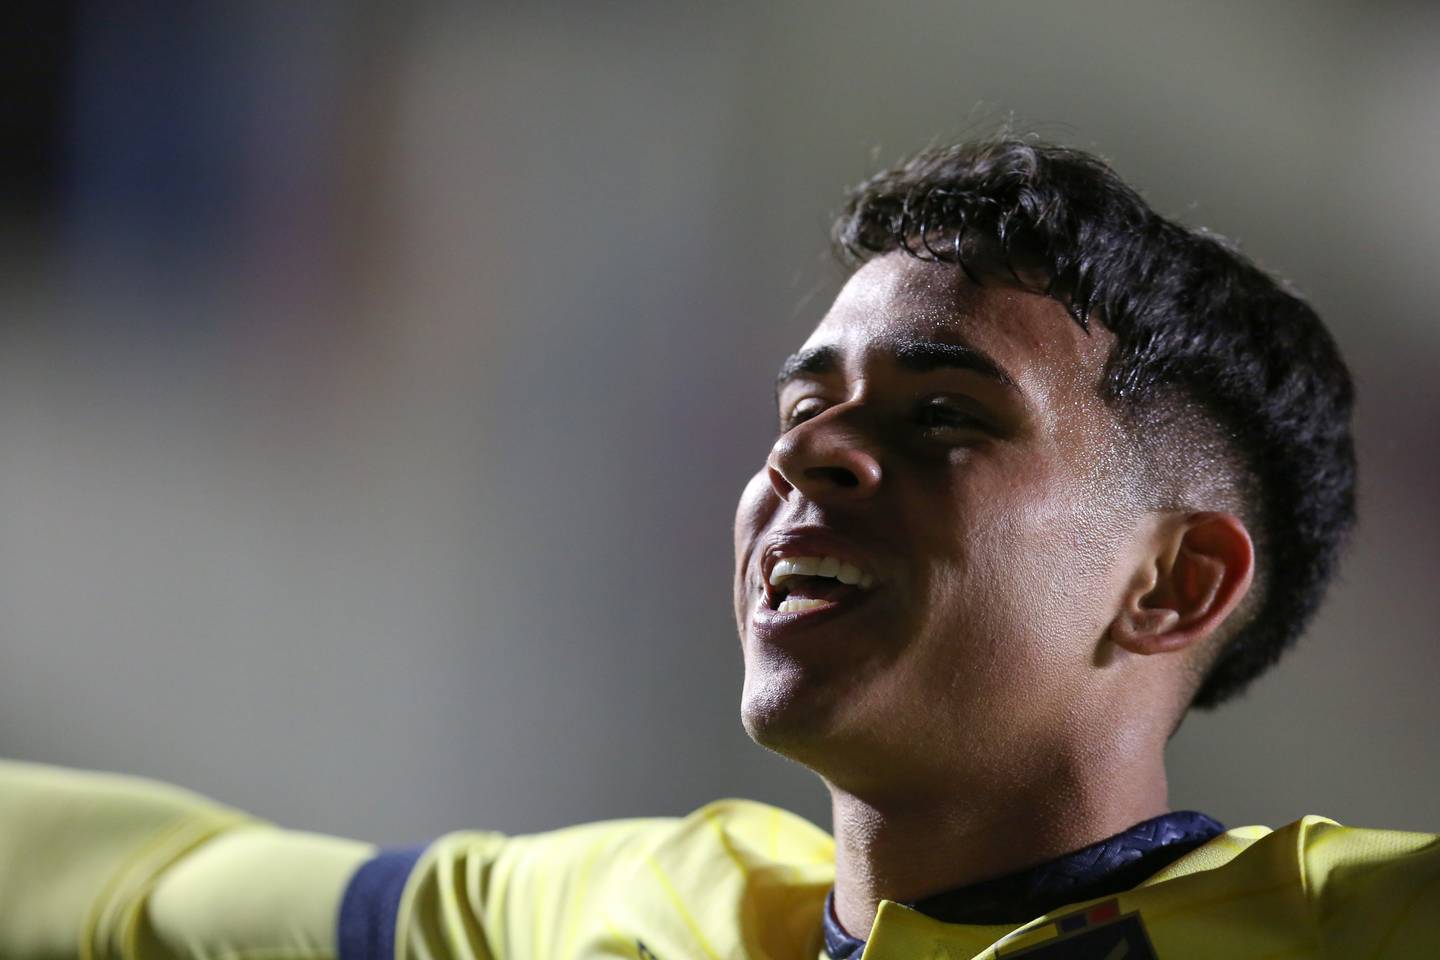 Kendry Páez de Ecuador celebra su gol hoy, en un partido de las Eliminatorias Sudamericanas para la Copa Mundial de Fútbol 2026 entre Bolivia y Ecuador en el estadio Hernando Siles en La Paz